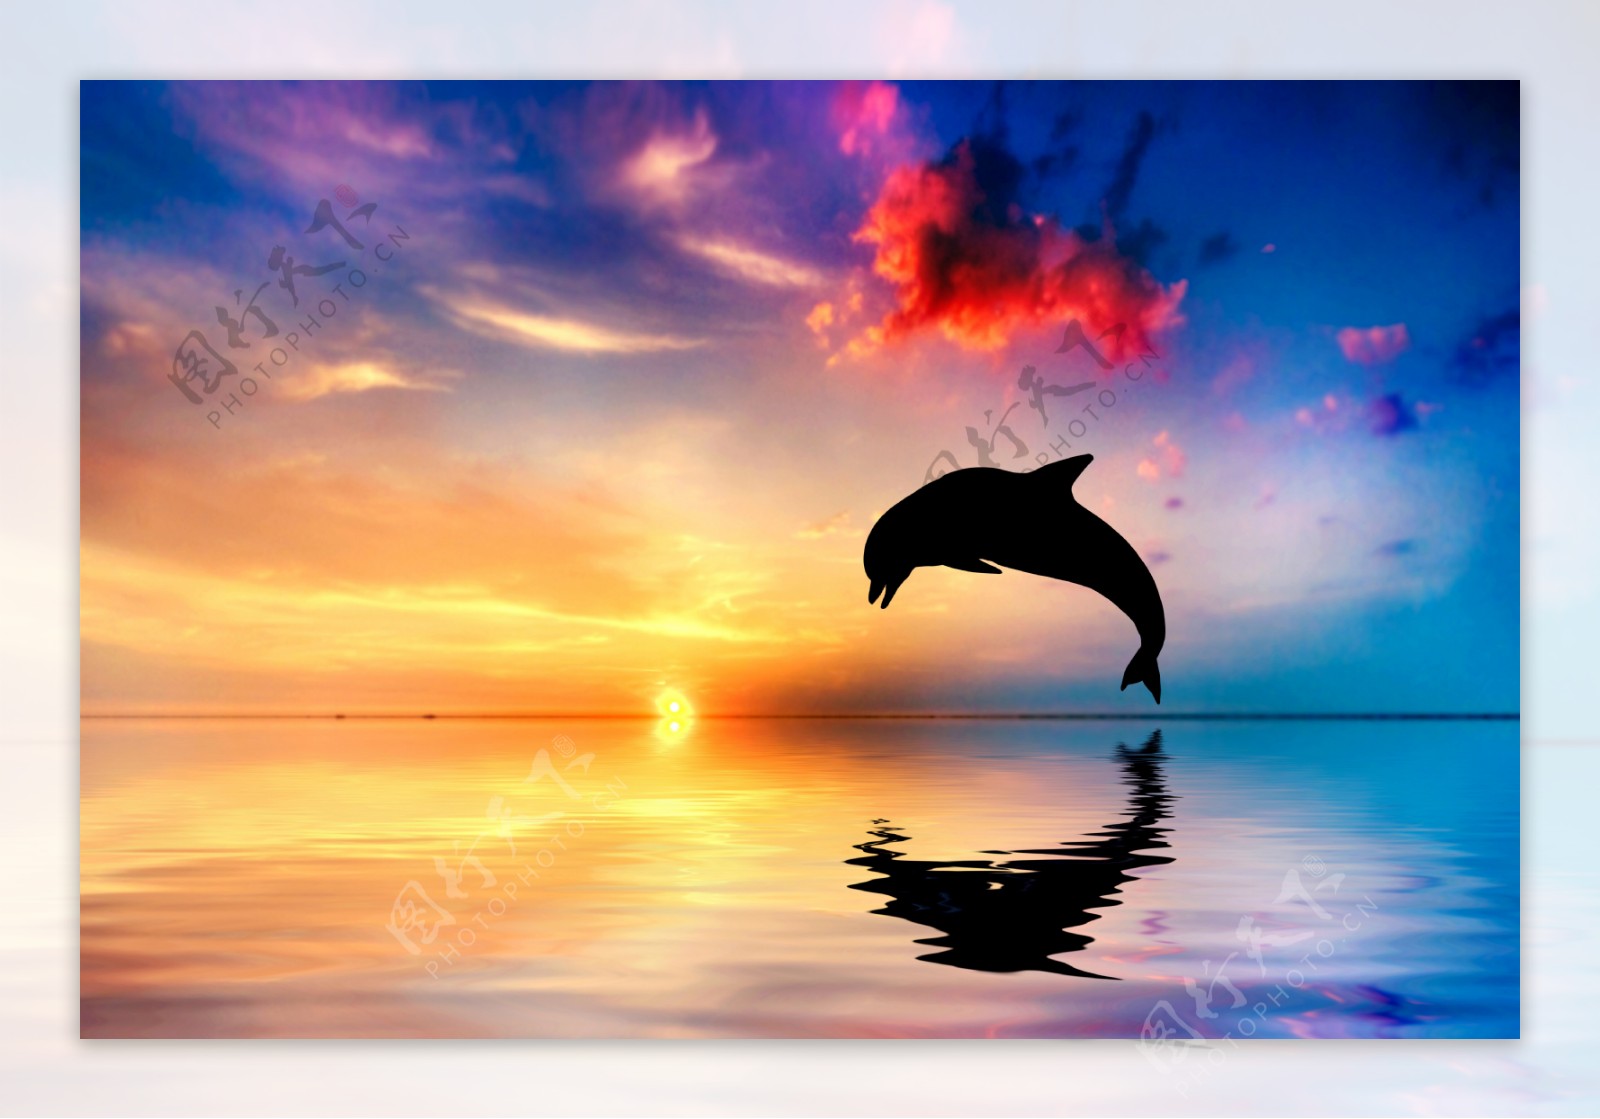 黄昏下海豚越出水面背景